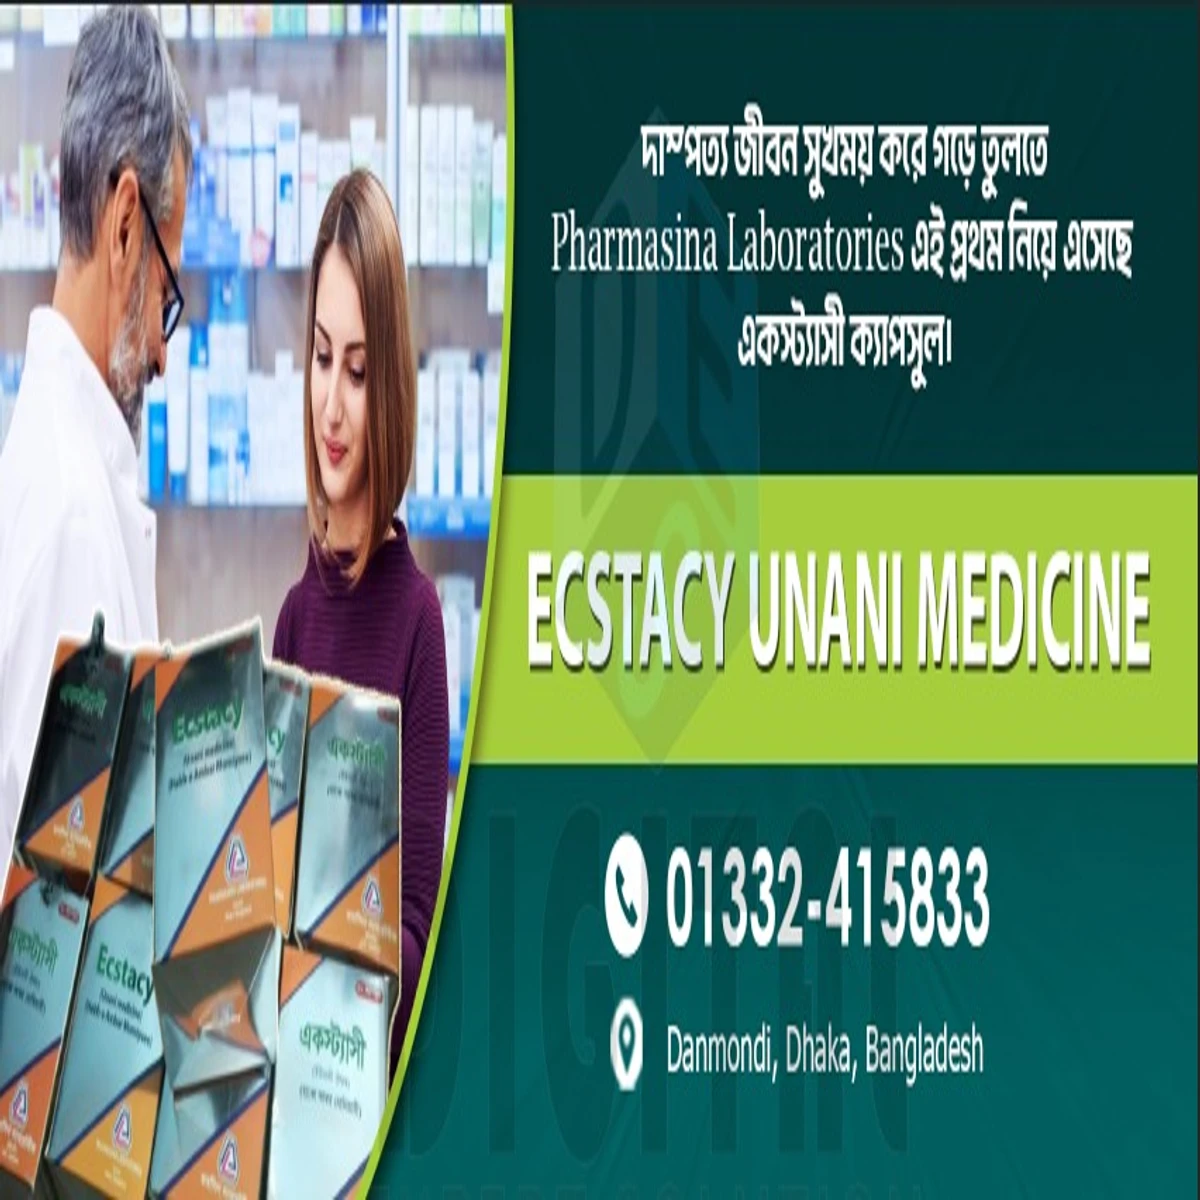 Ecsatcy product of pharmasina company